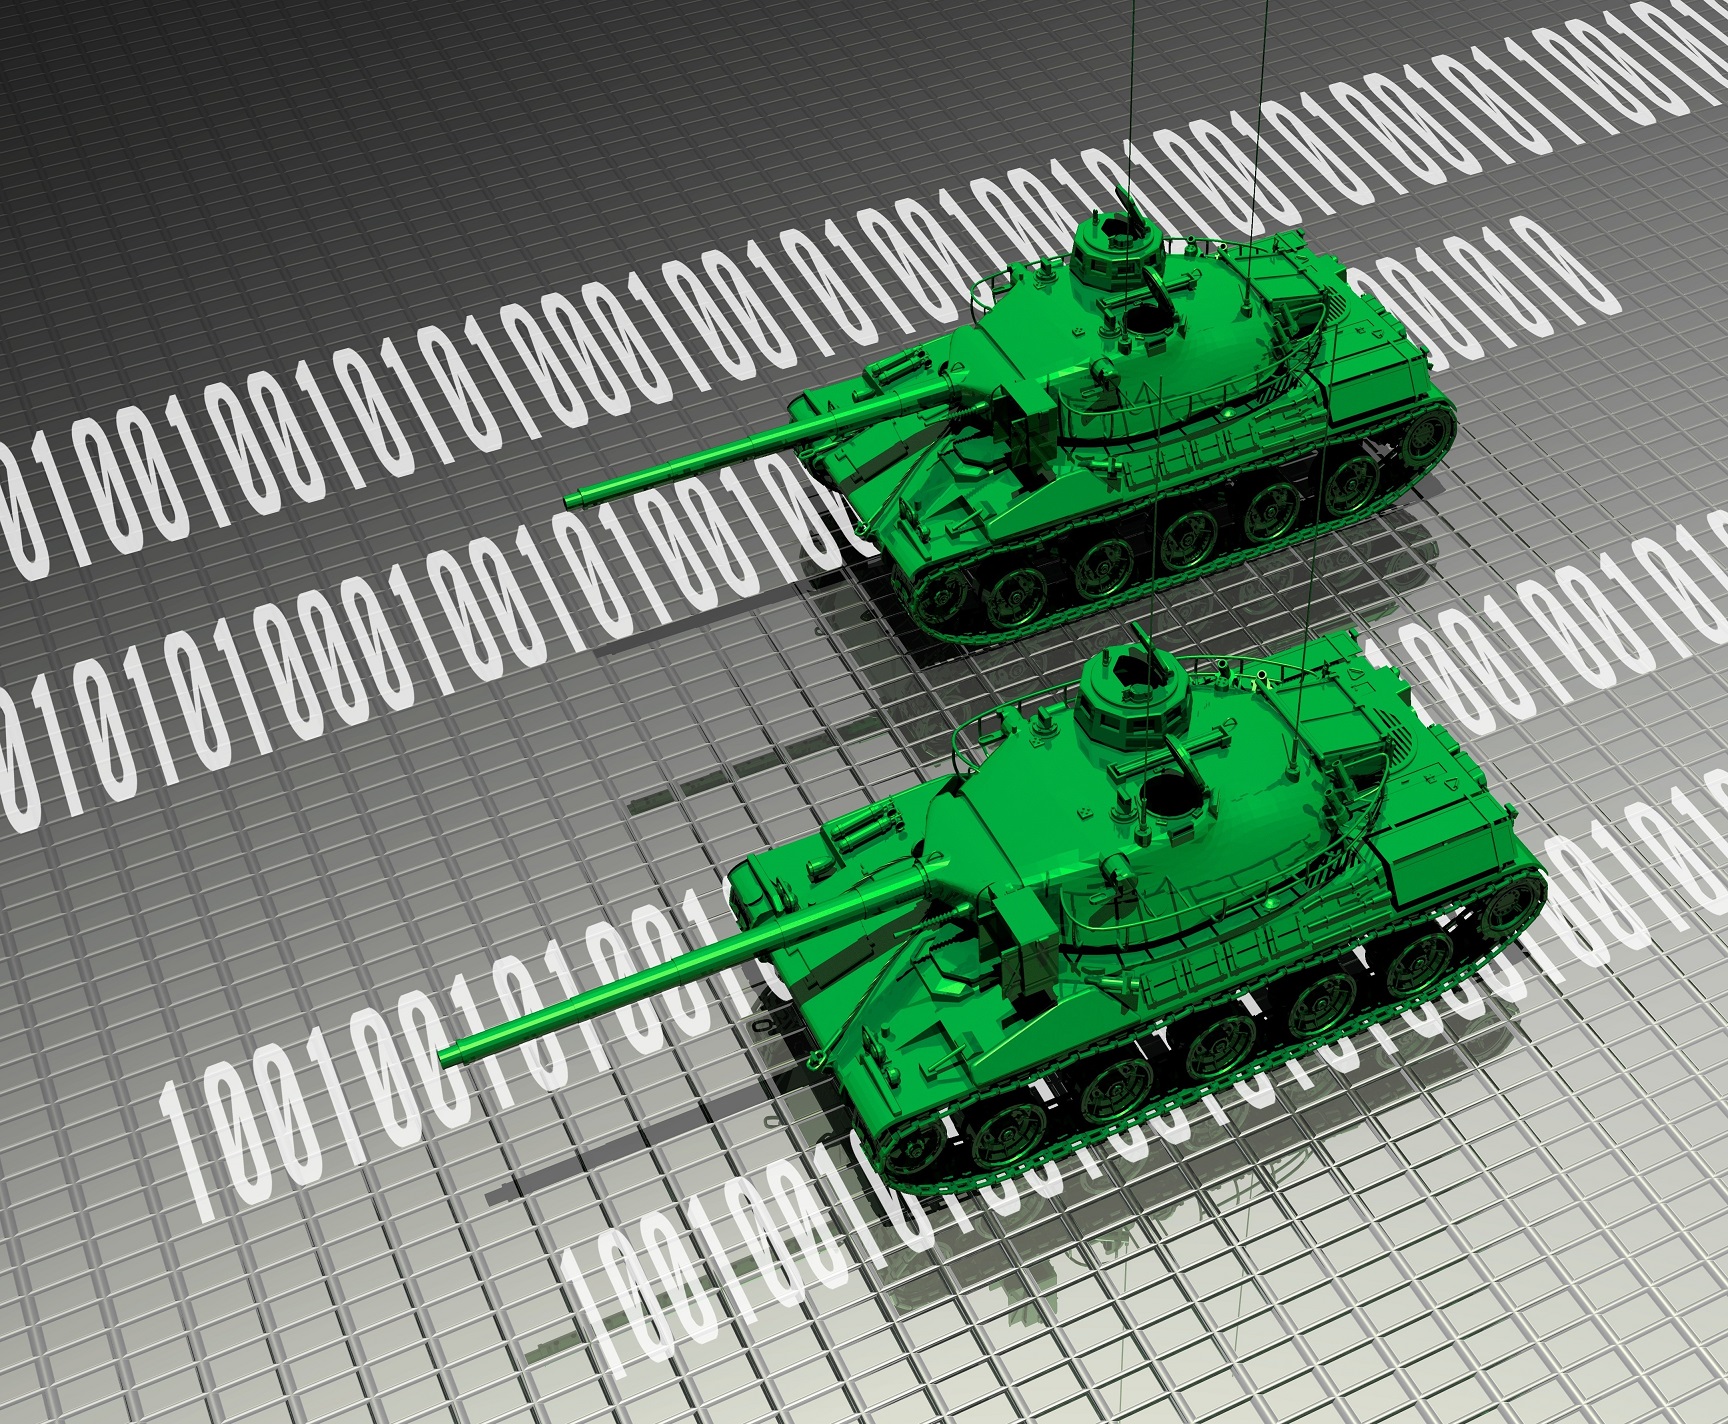 Virtual tanks attacking computer data